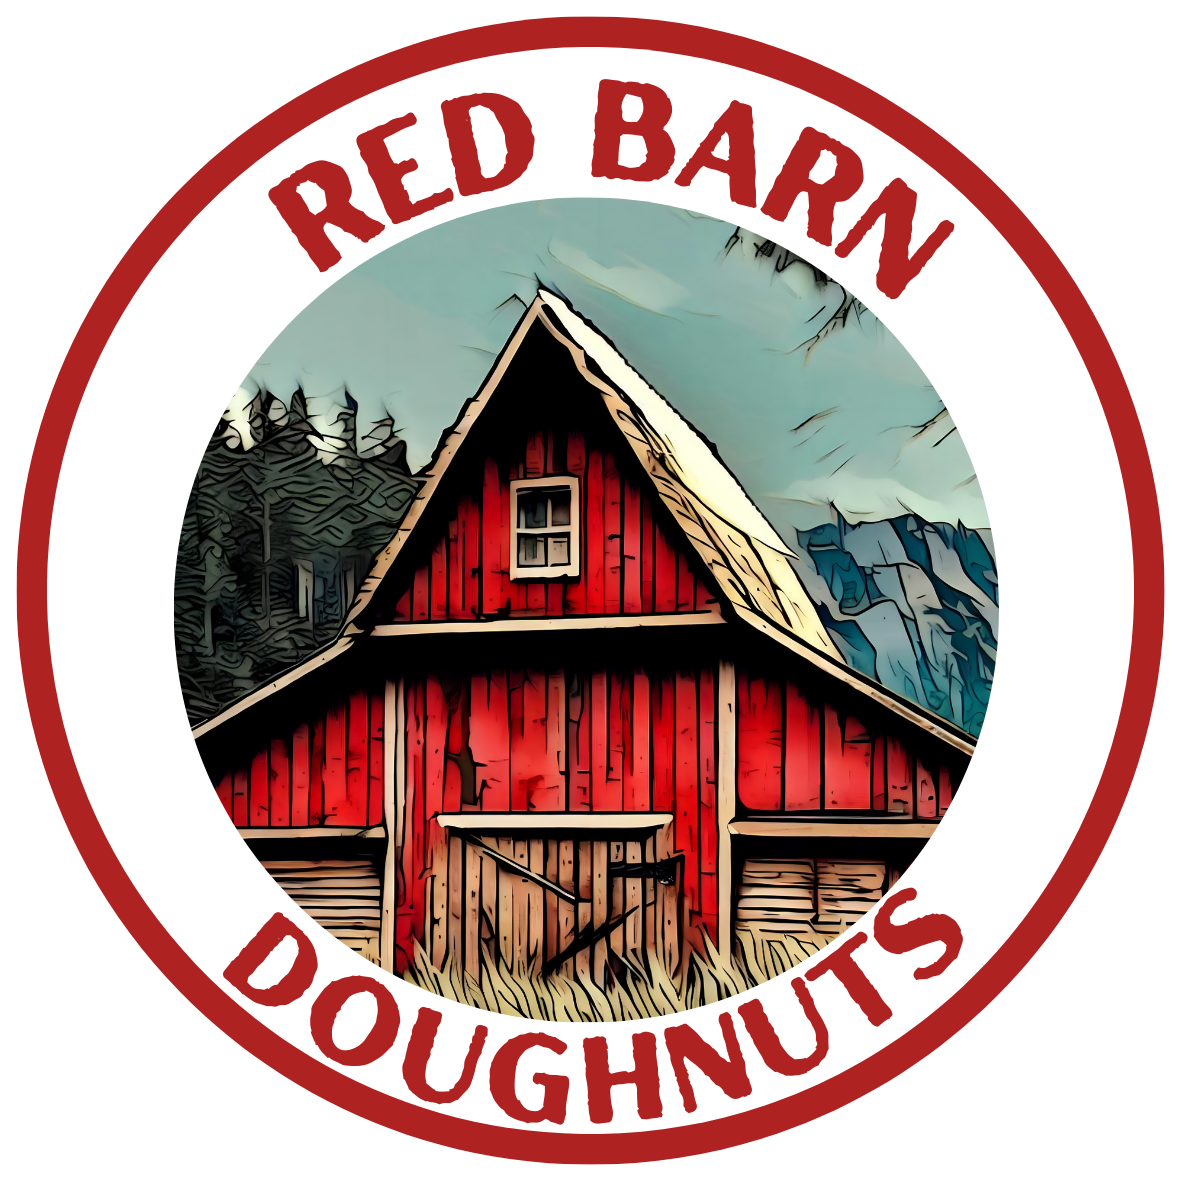 redbarndoughnuts.com